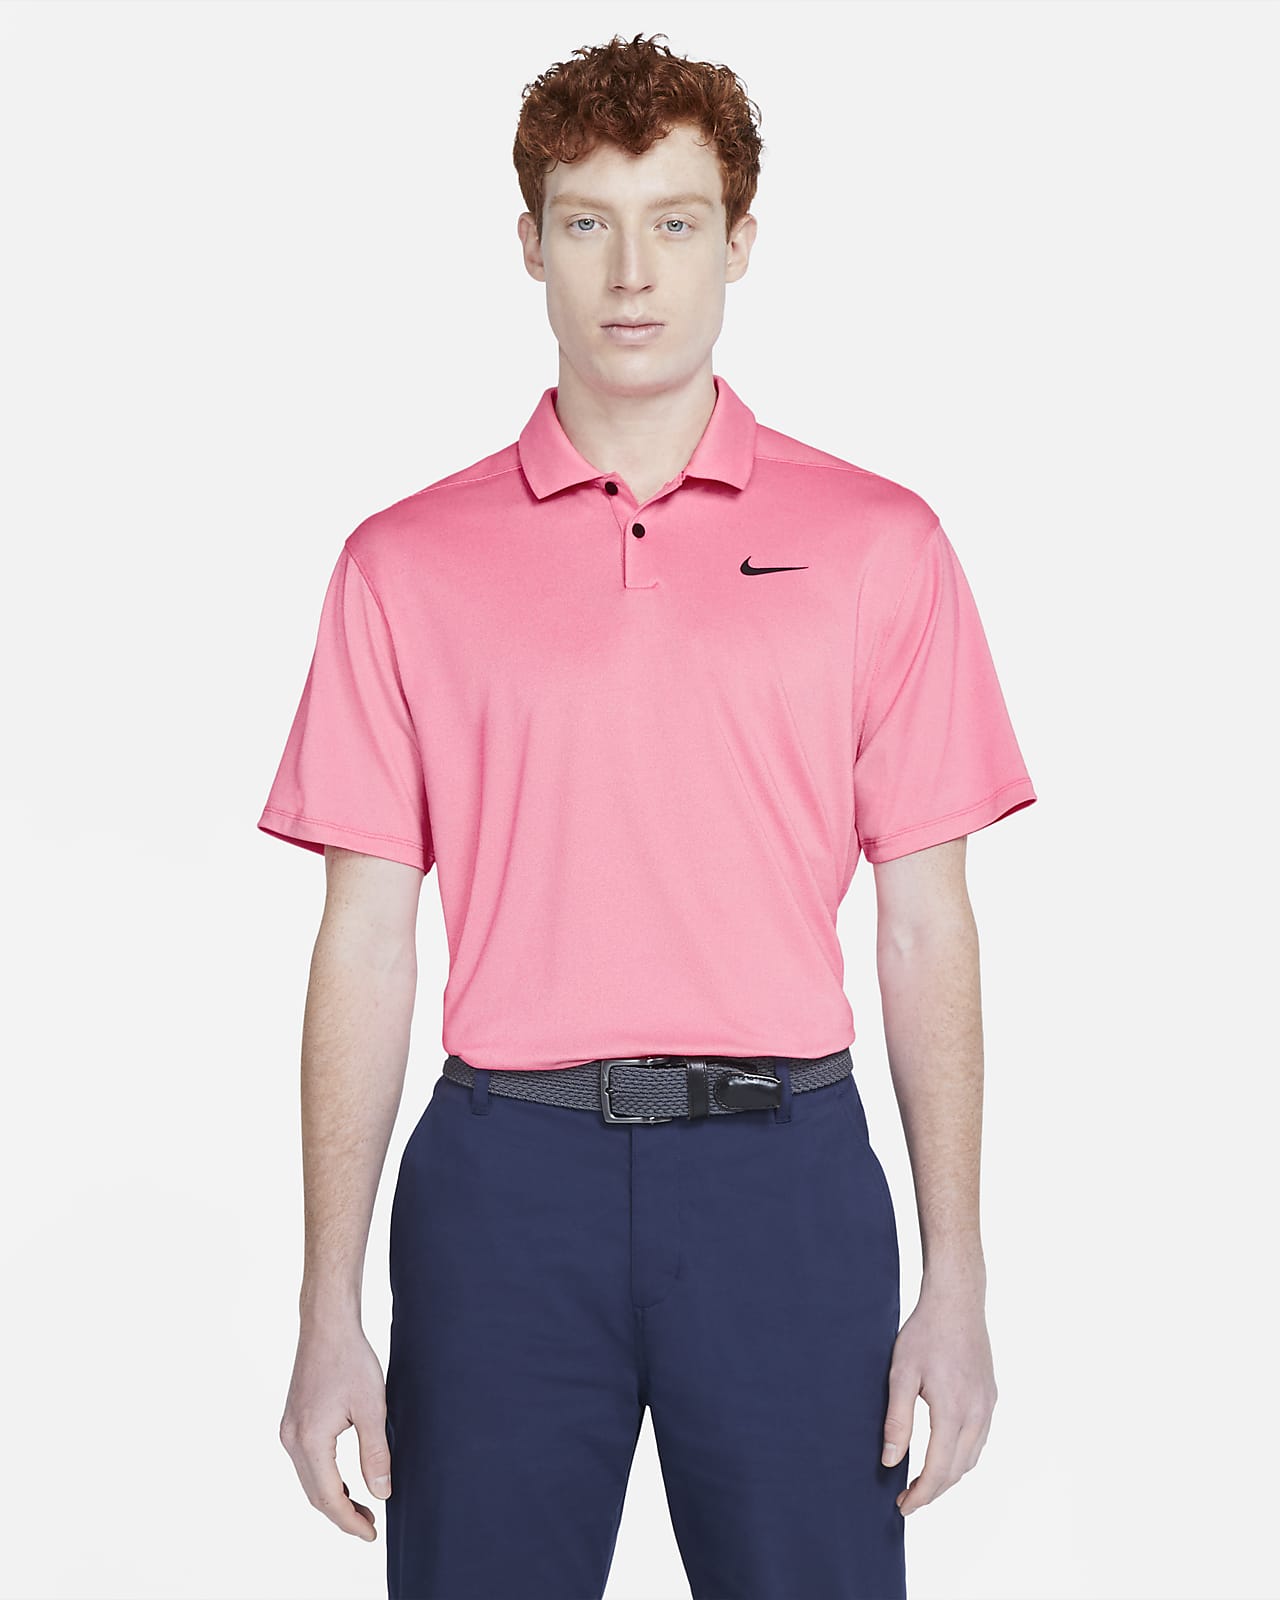 Nike Dri-FIT Vapor golfskjorte til herre